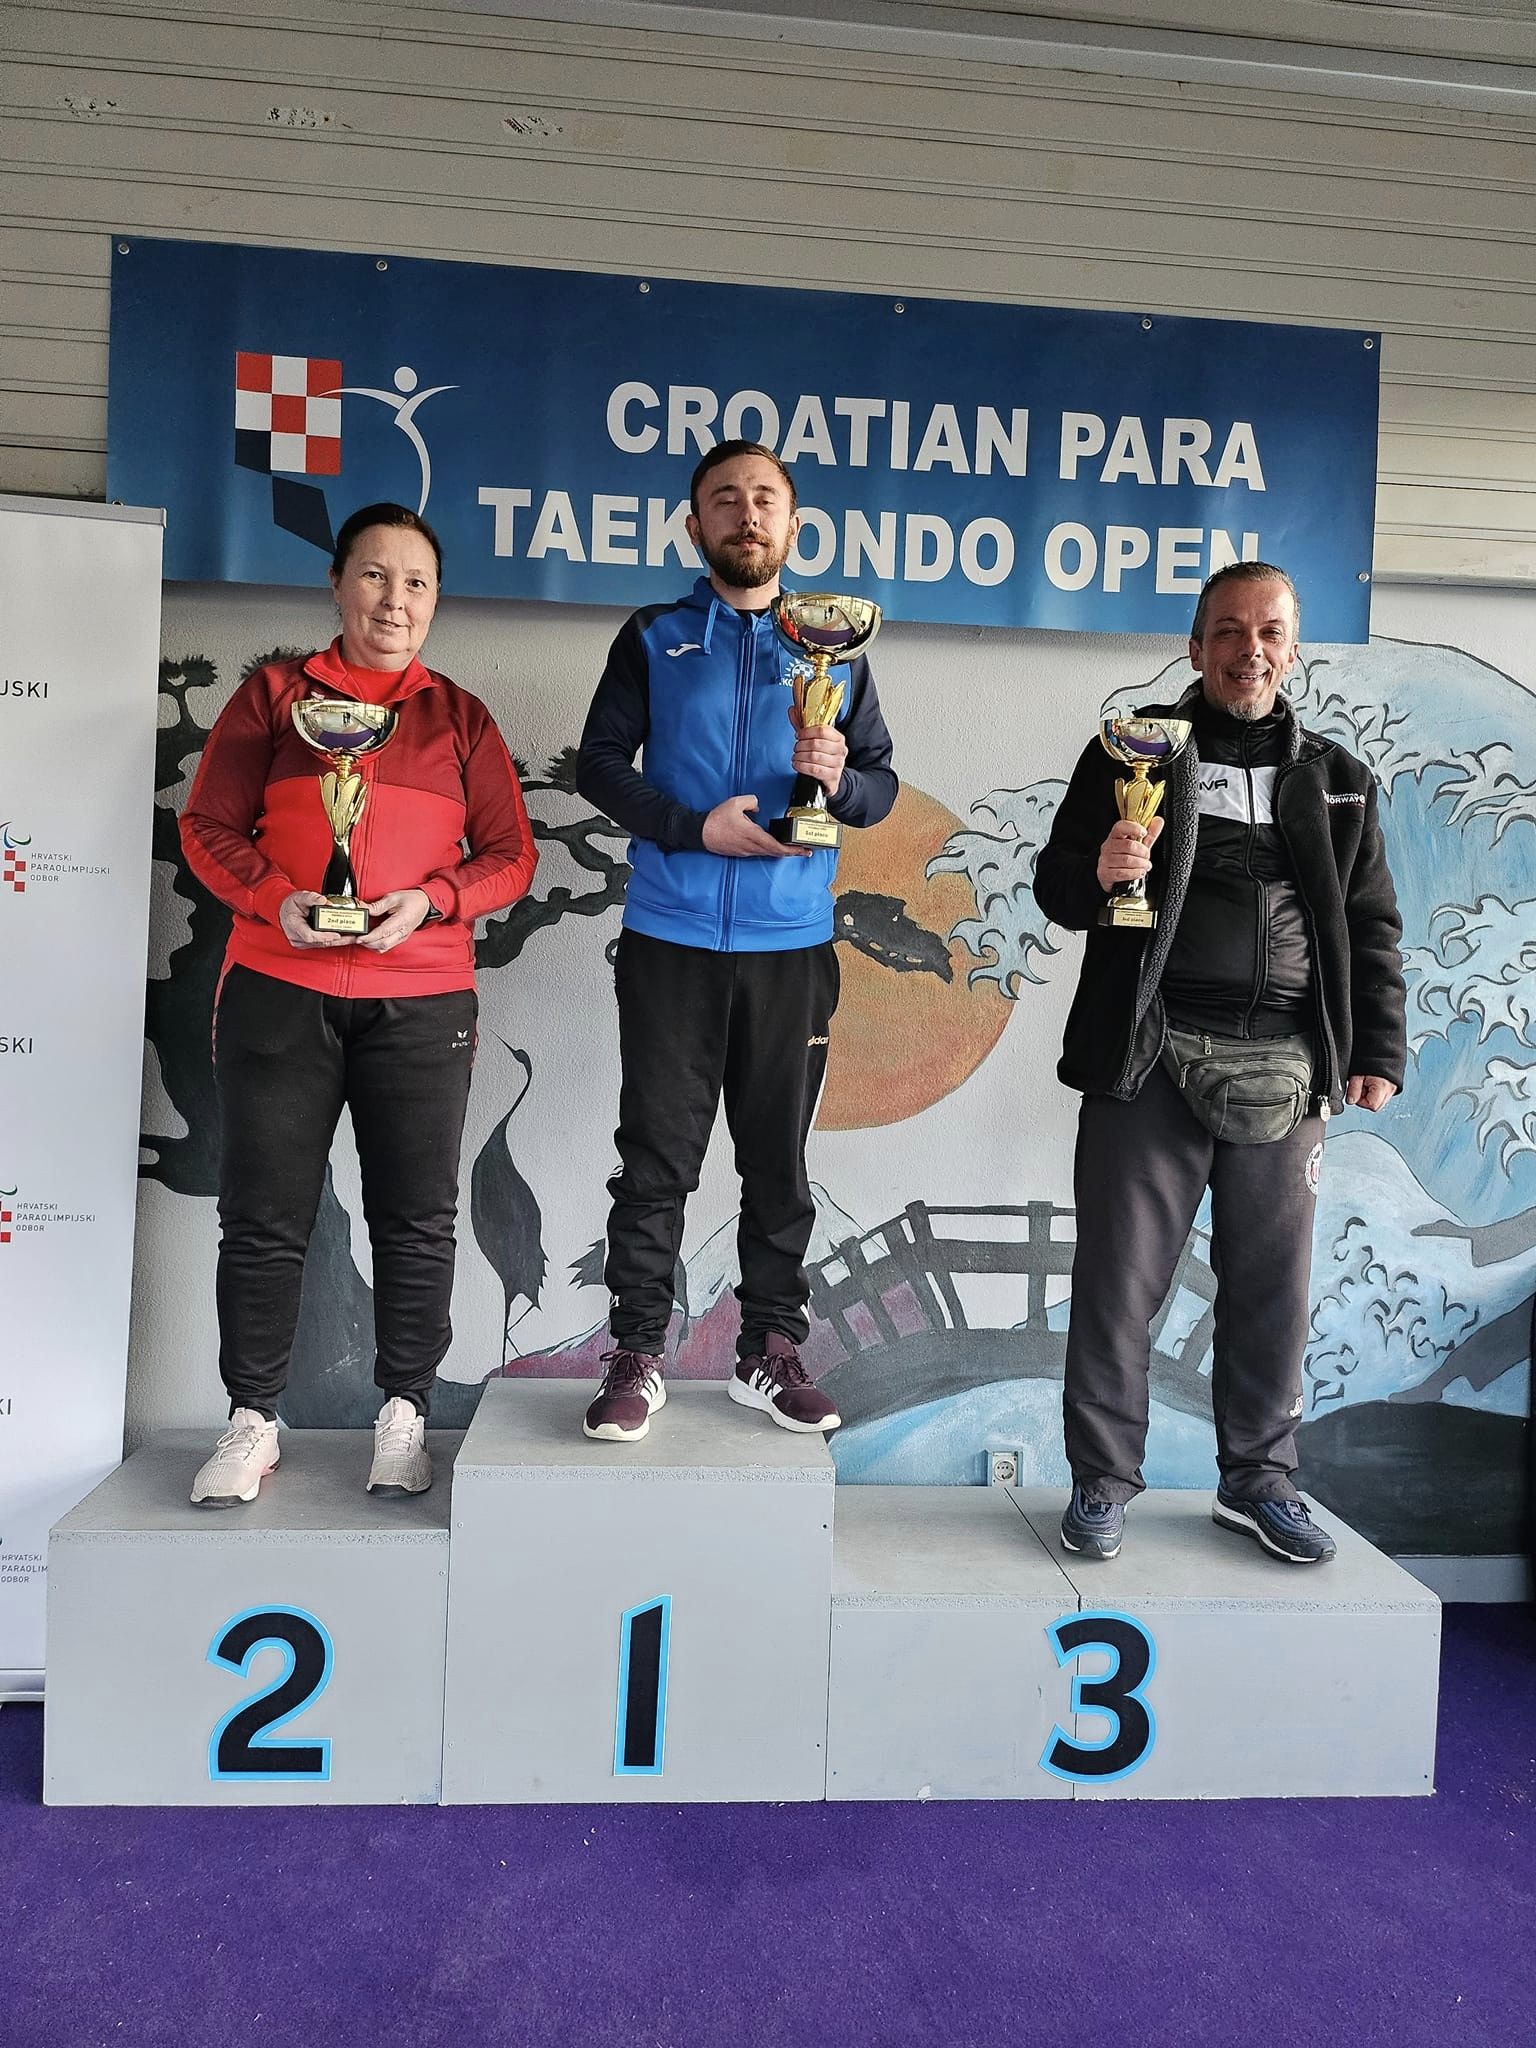 6th International Croatia Parataekwondo Open – Poomsae